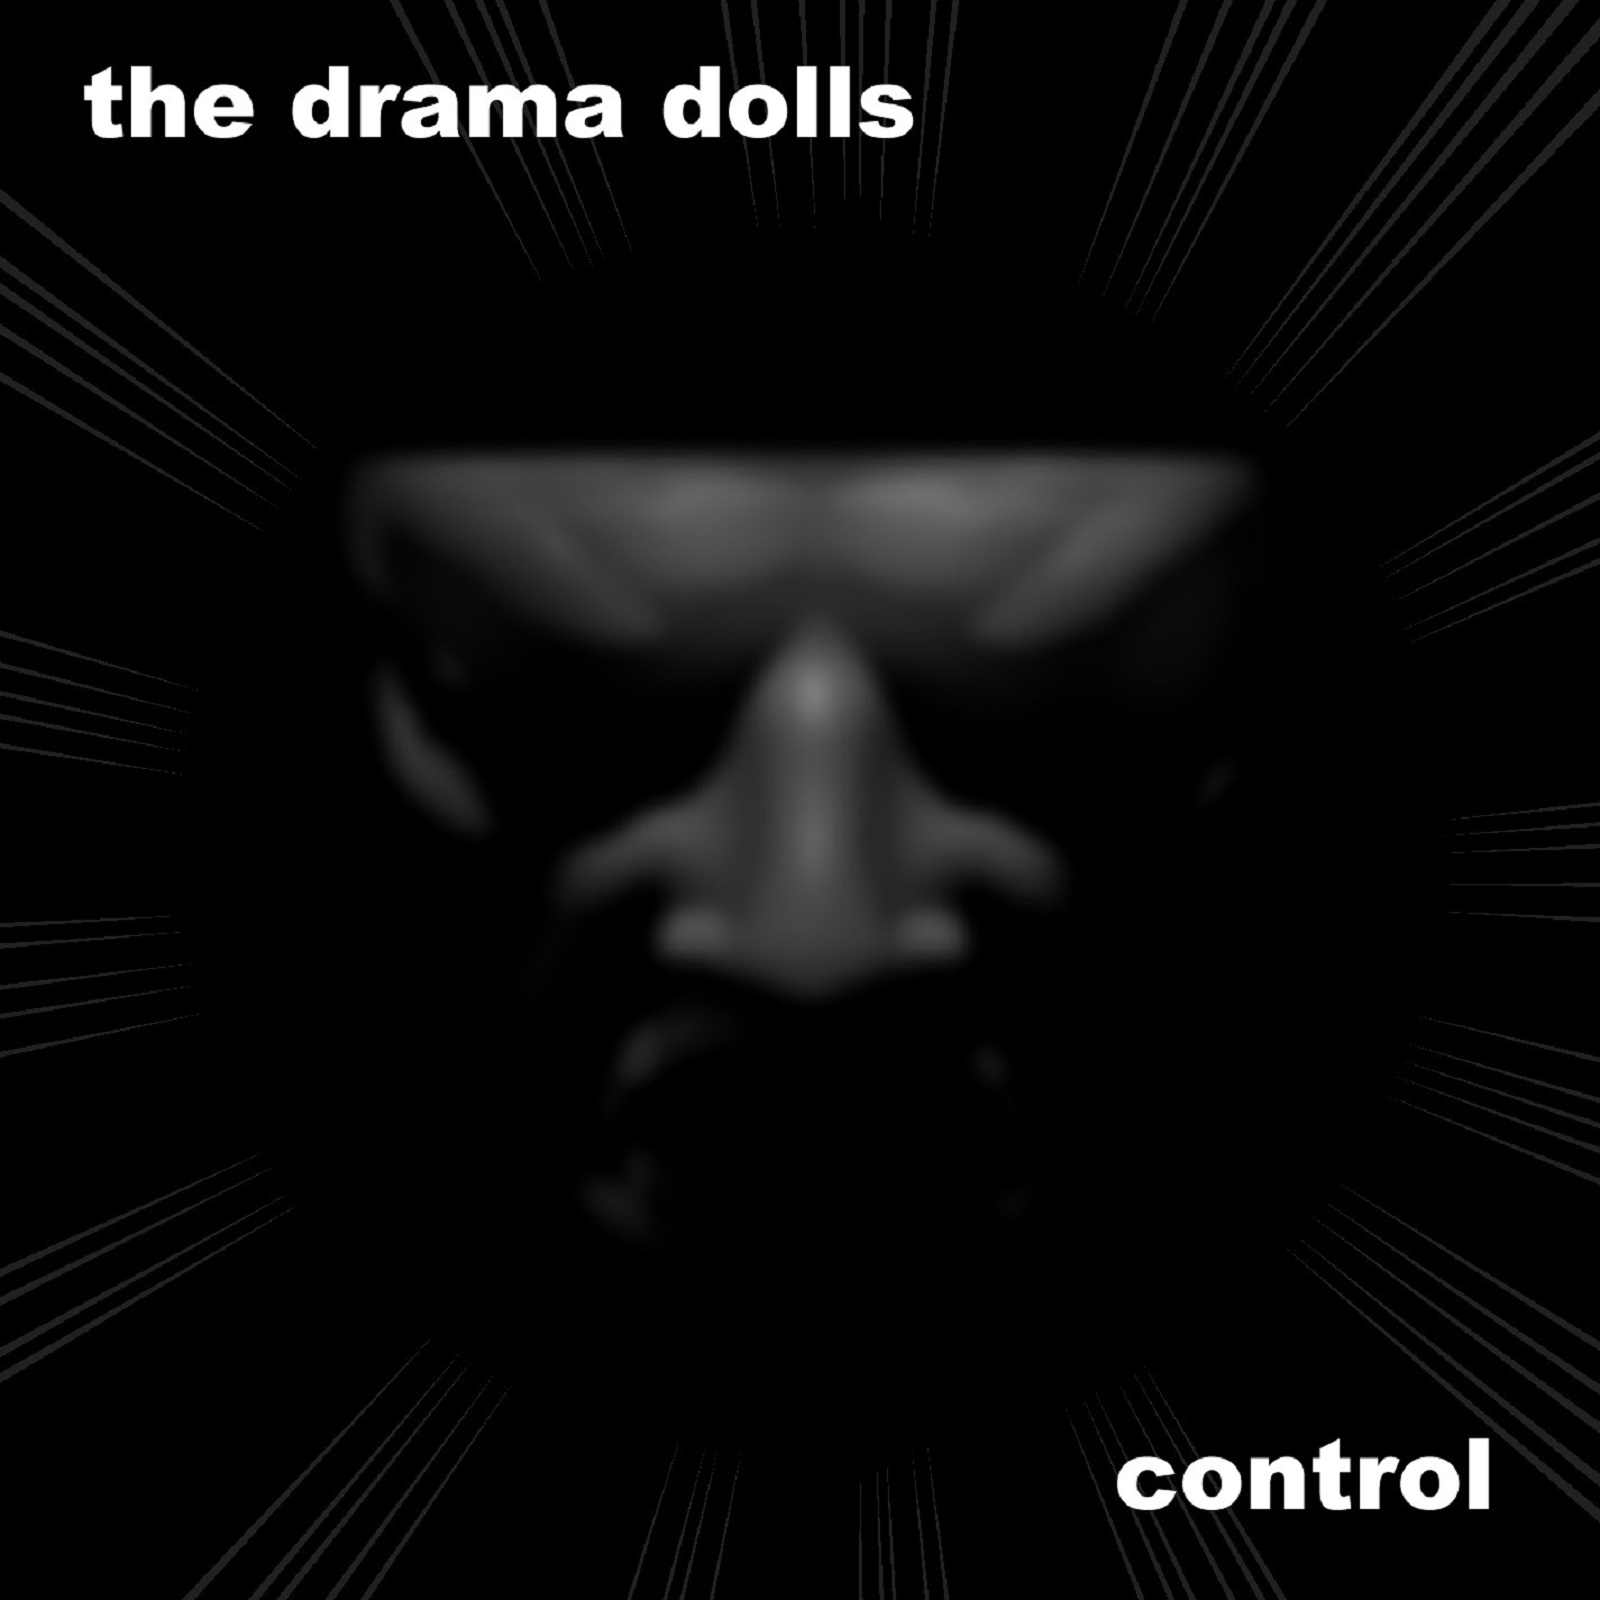  The Drama Dolls – “Control”